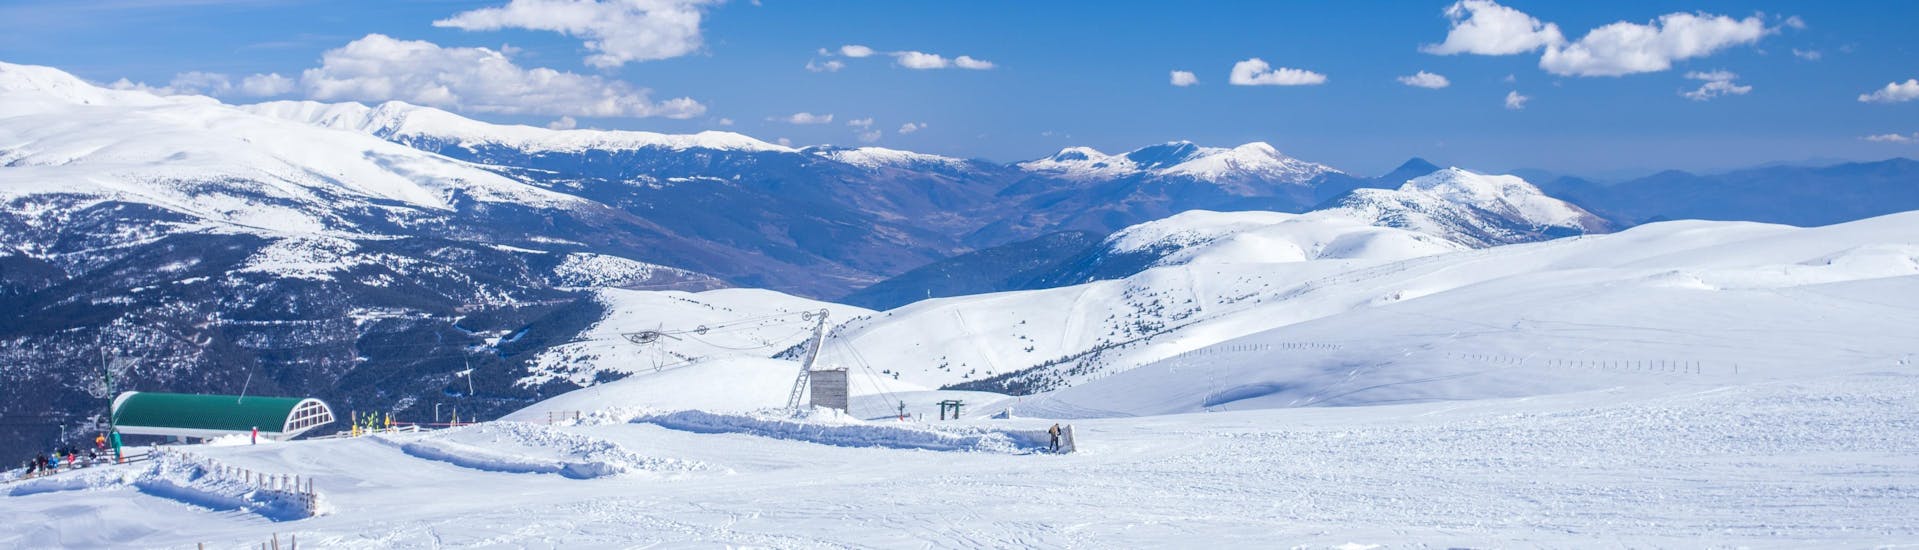 Een foto van de pistes van La Molina waar u kunt gaan skiën met de skilessen.